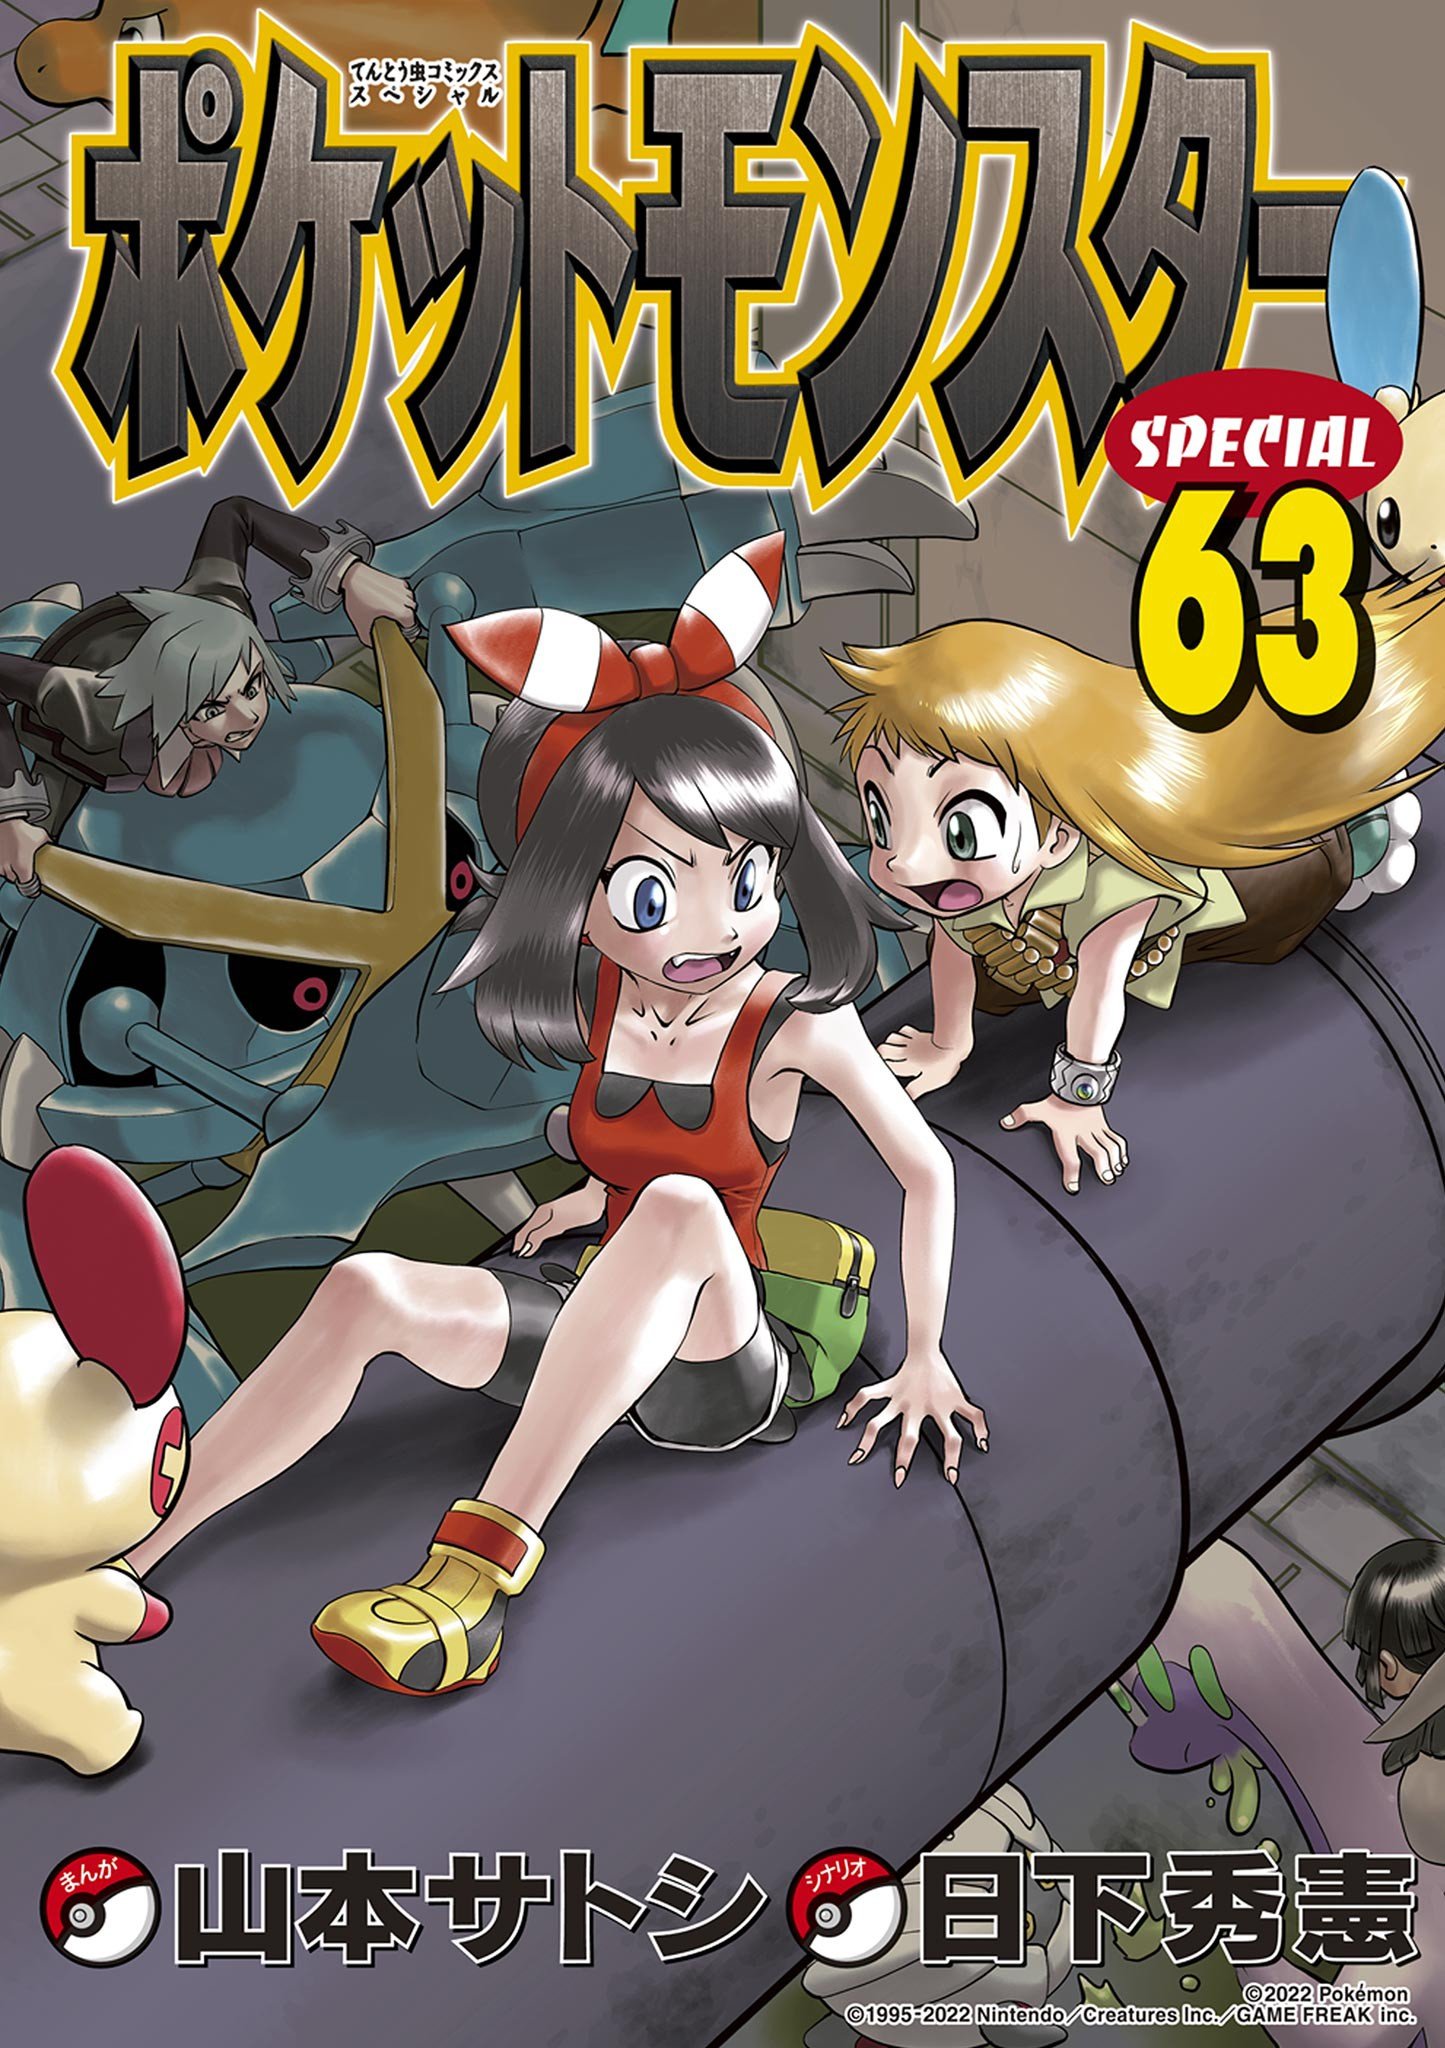 Pokémon Special cover 1